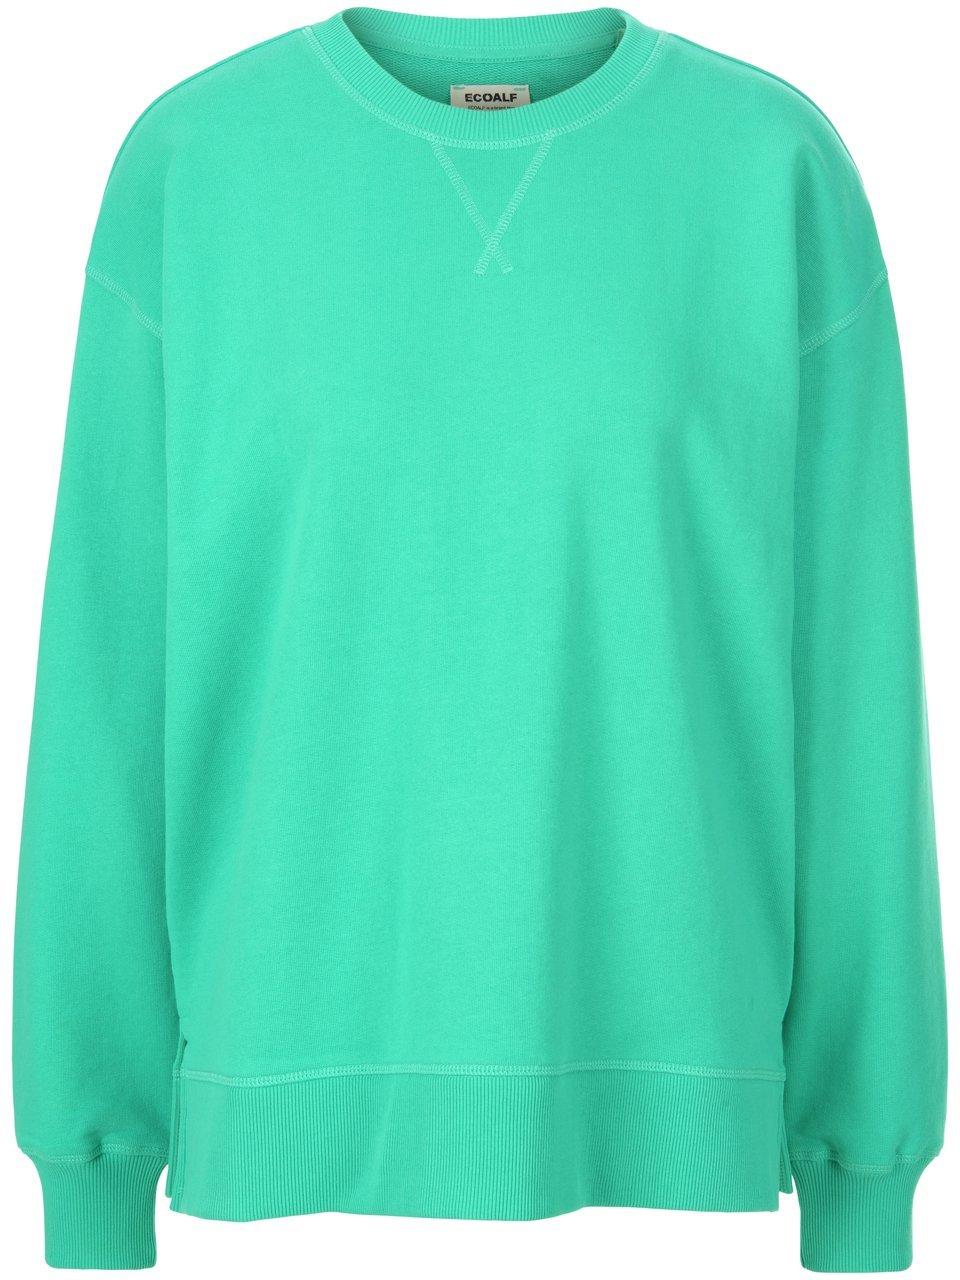 Sweatshirt Van Ecoalf groen